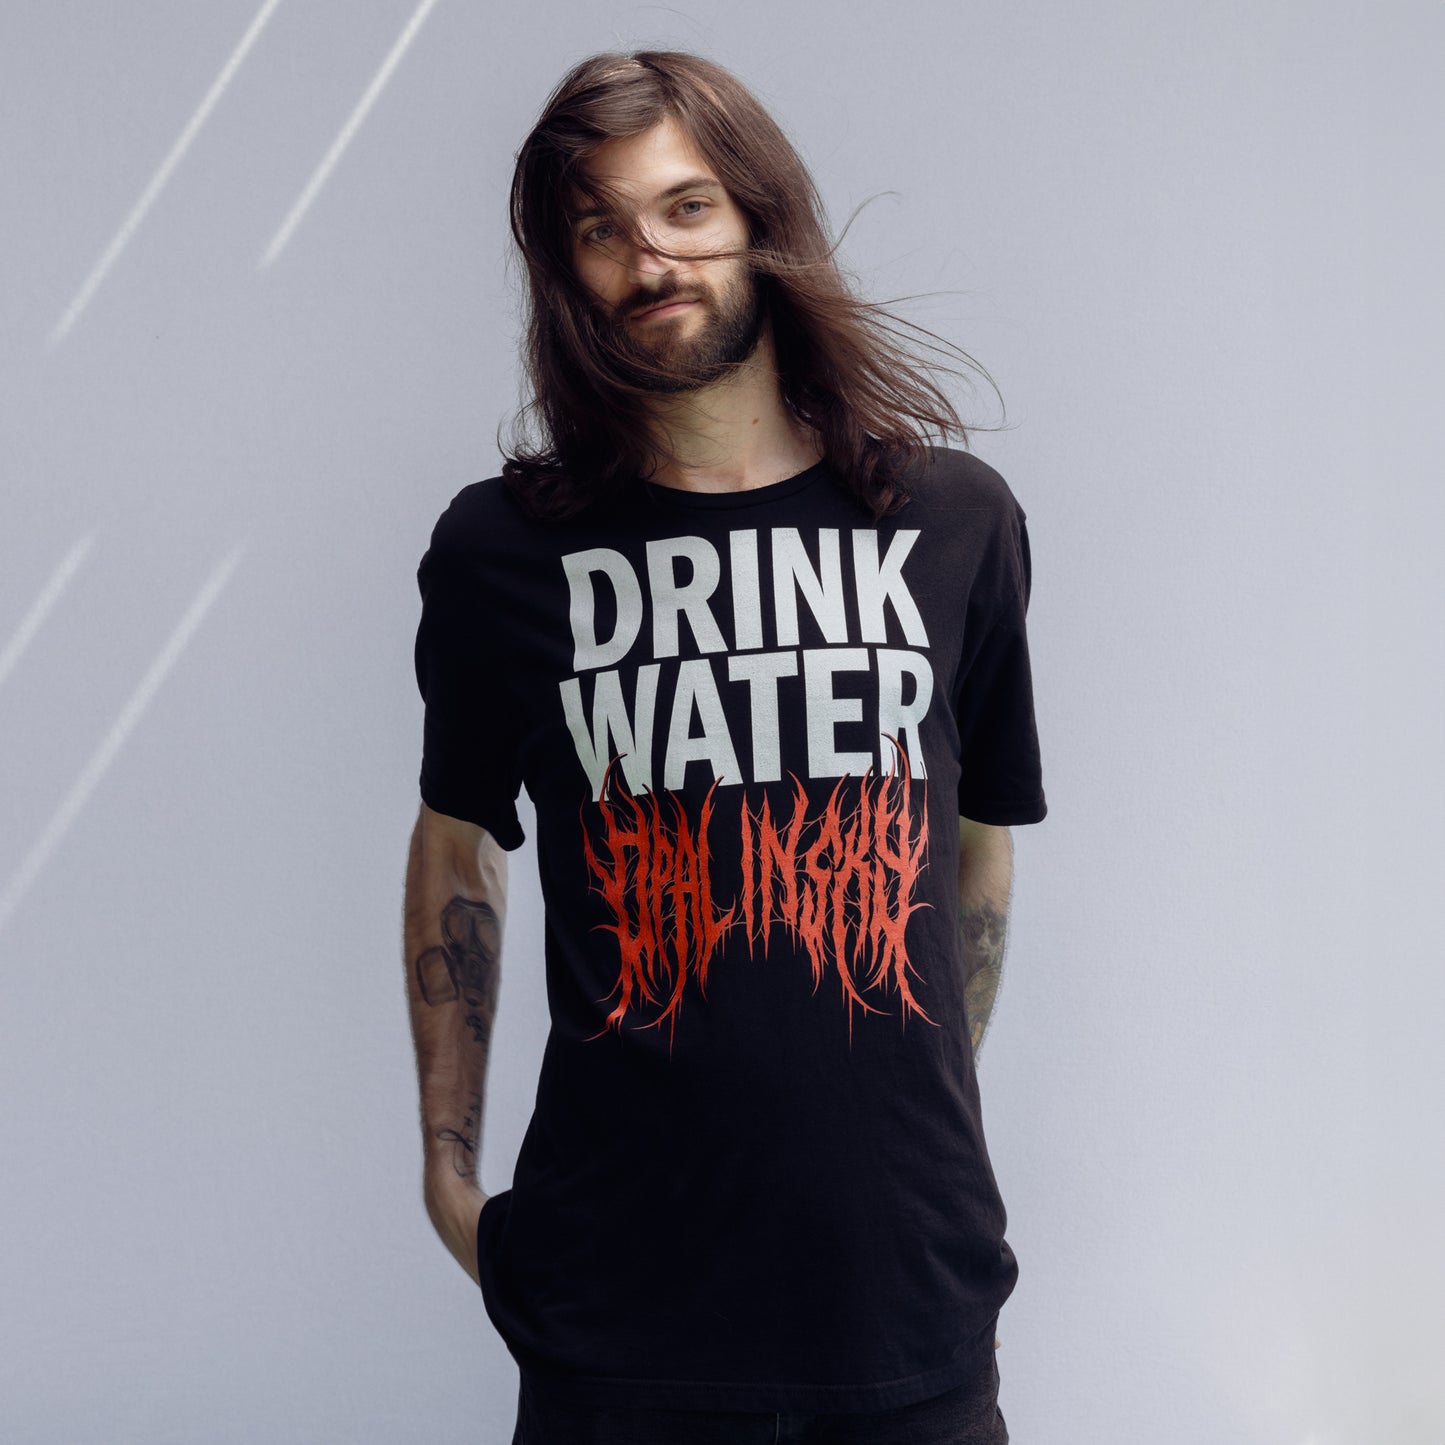 OPAL IN SKY "Drink Water" Unisex T-Shirt